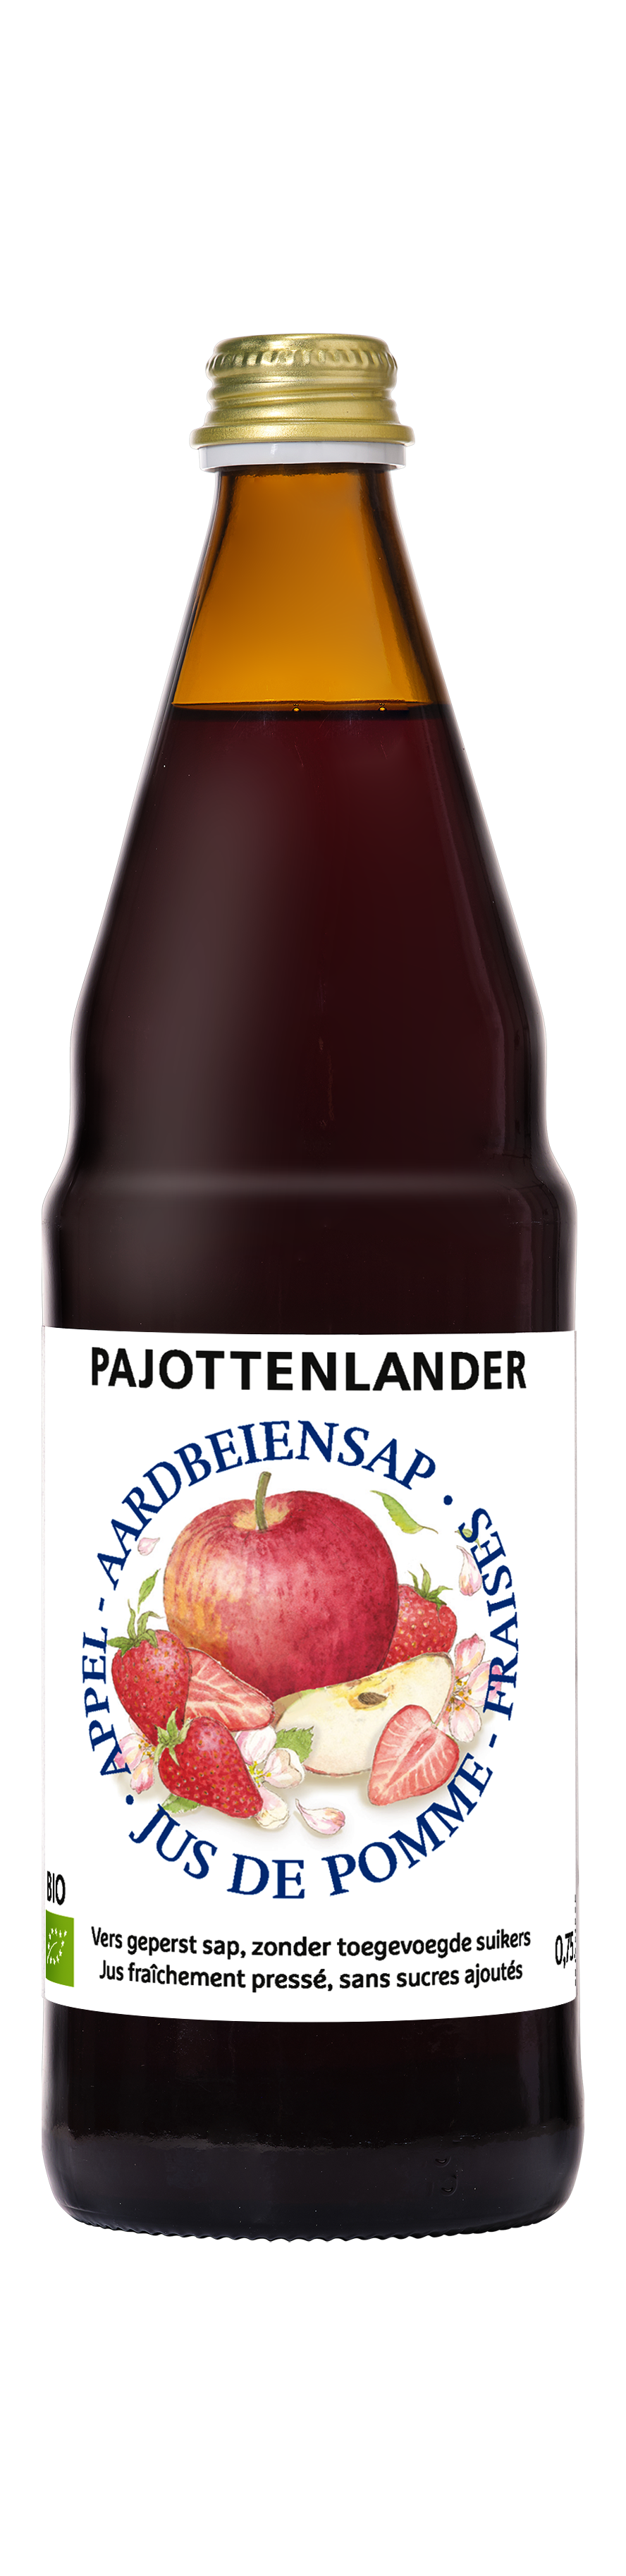 Pajottenlander Jus de pomme-fraise bio 0,75L